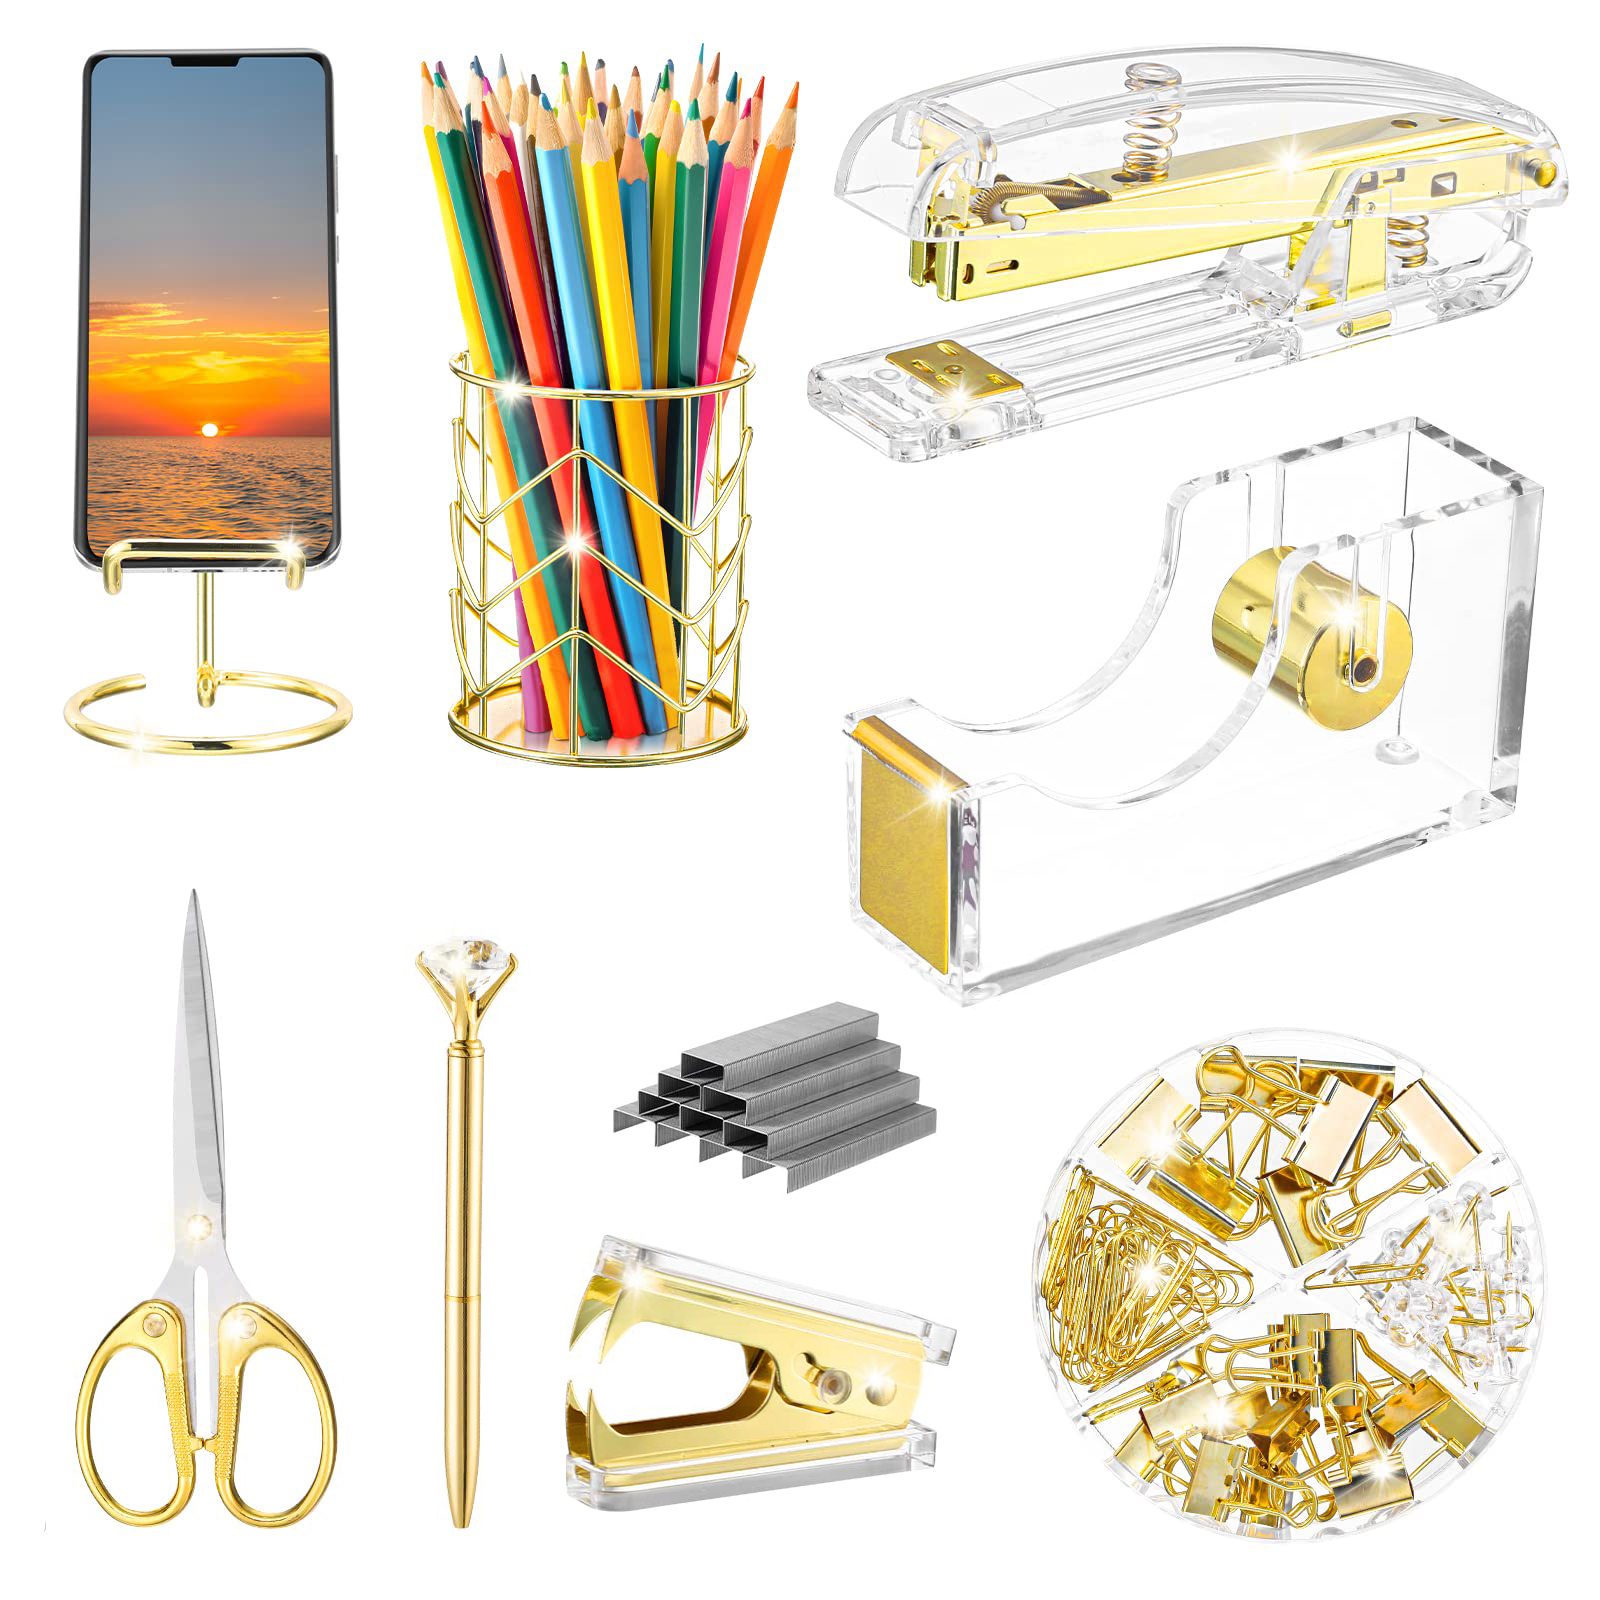 Golden Office Supplies Set, Acrylic Stapler, Staple Remover, Phone Holder,  Tape Holder, Pen Holder, Ballpoint Pen, Scissors, Binder Clips, And Staples